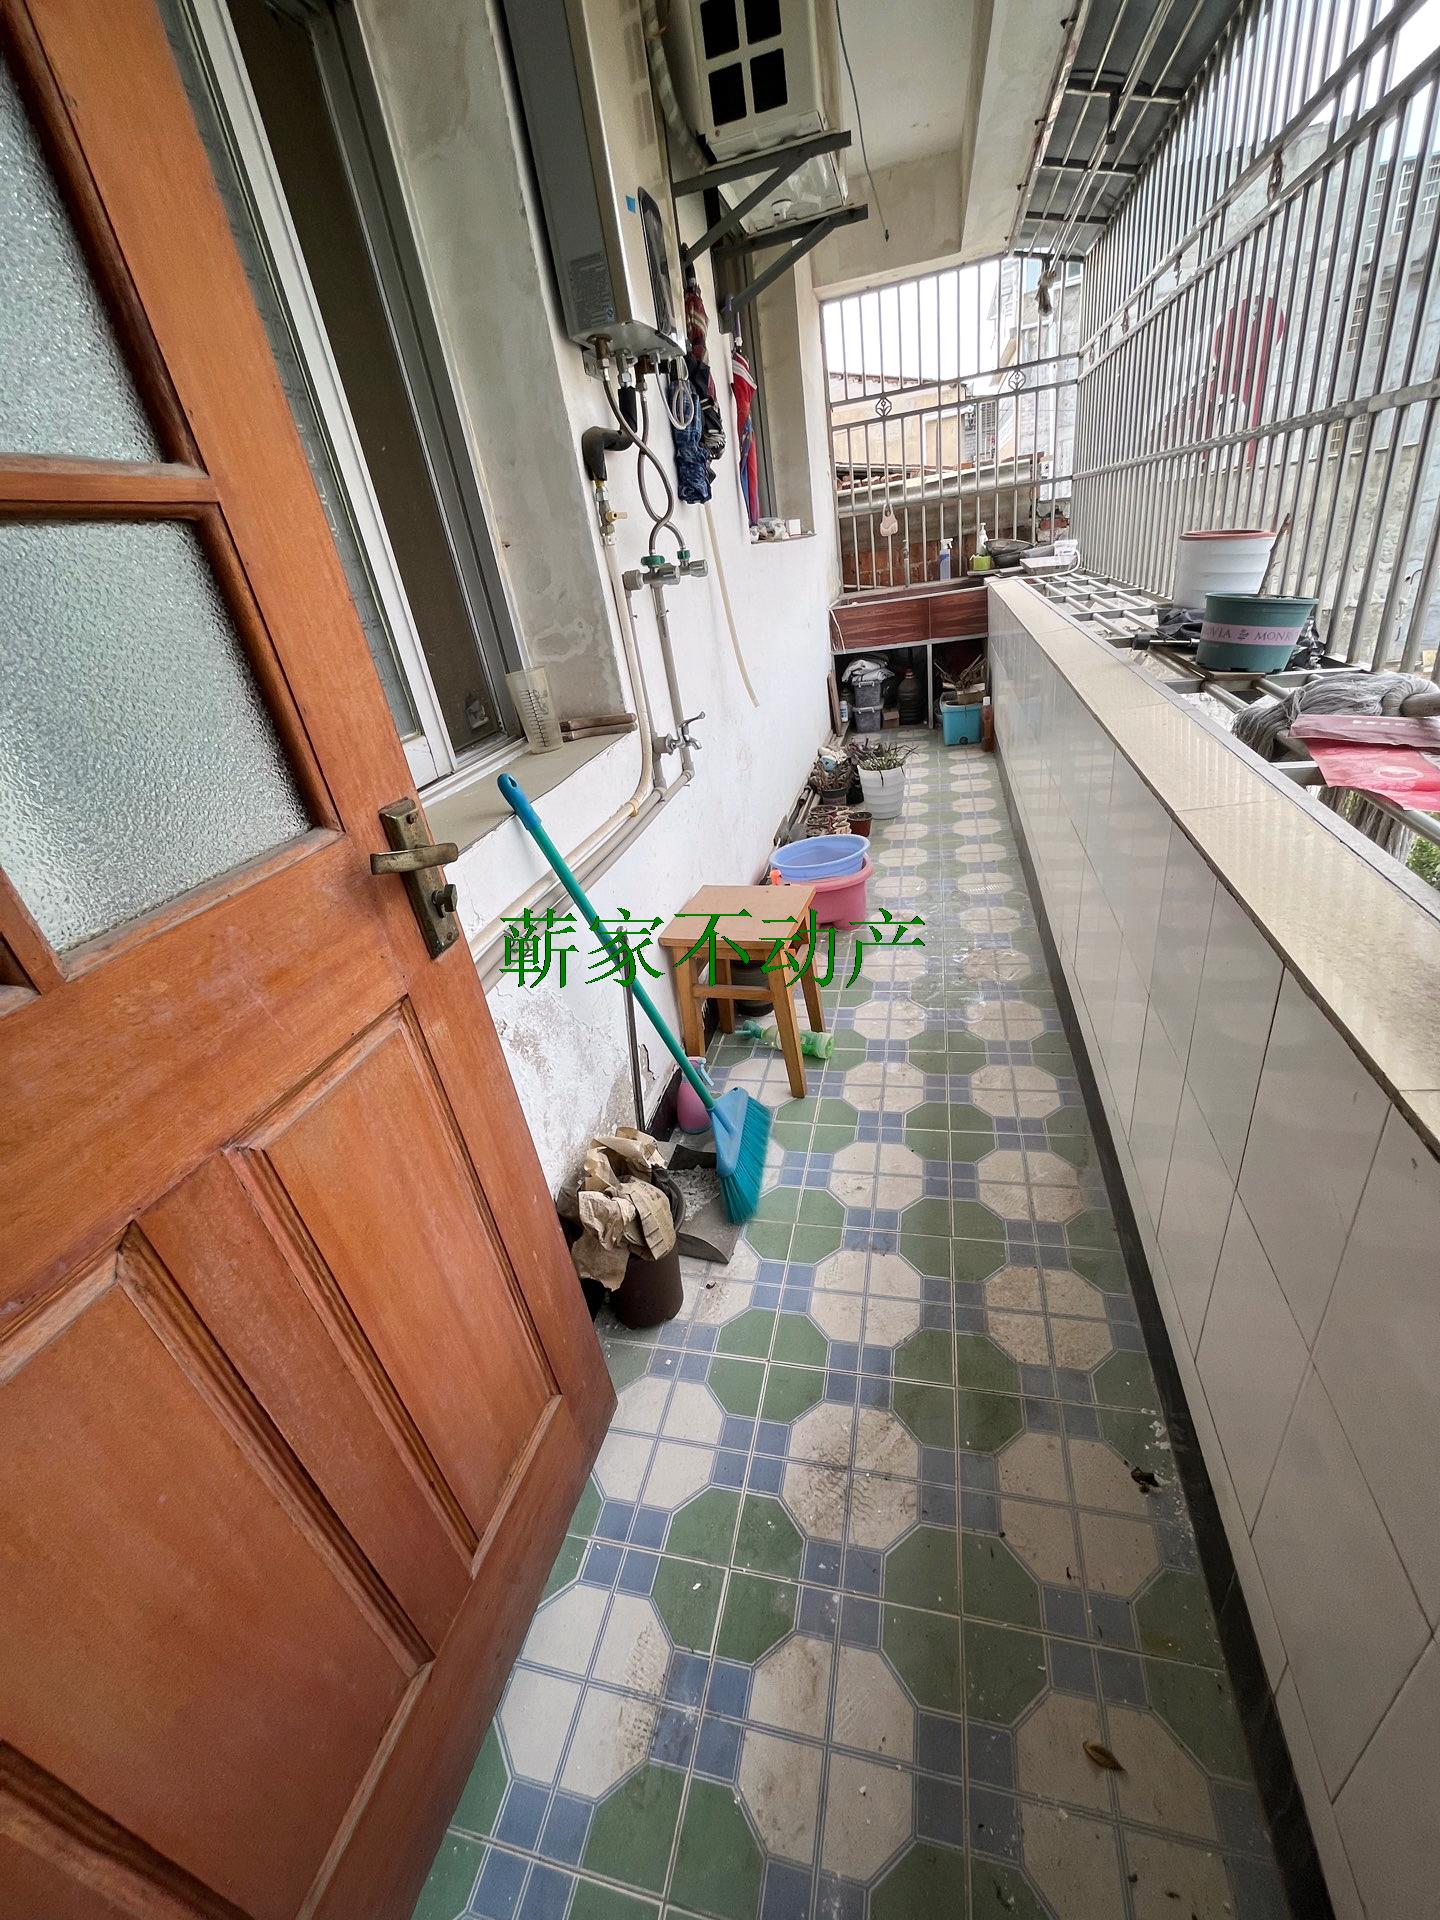 吴庄社区附近145平居家装修证满五年急售3楼楼梯房采光好3房2卫